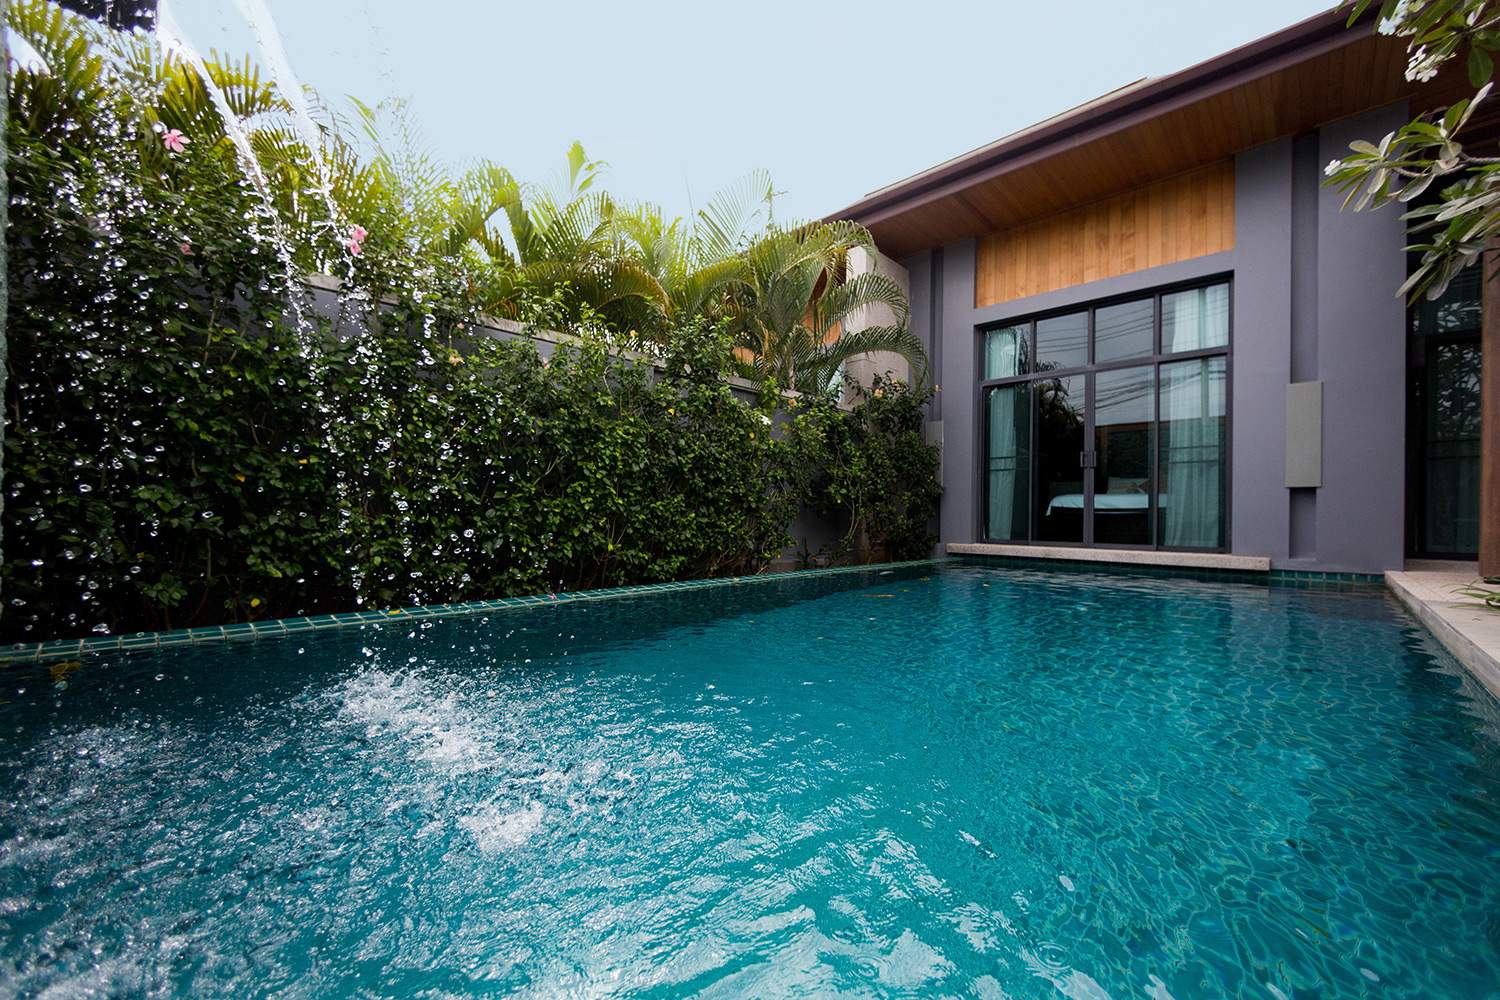 Rent villa Kokyang Epa, Thailand, Phuket, Nai Harn | Villacarte